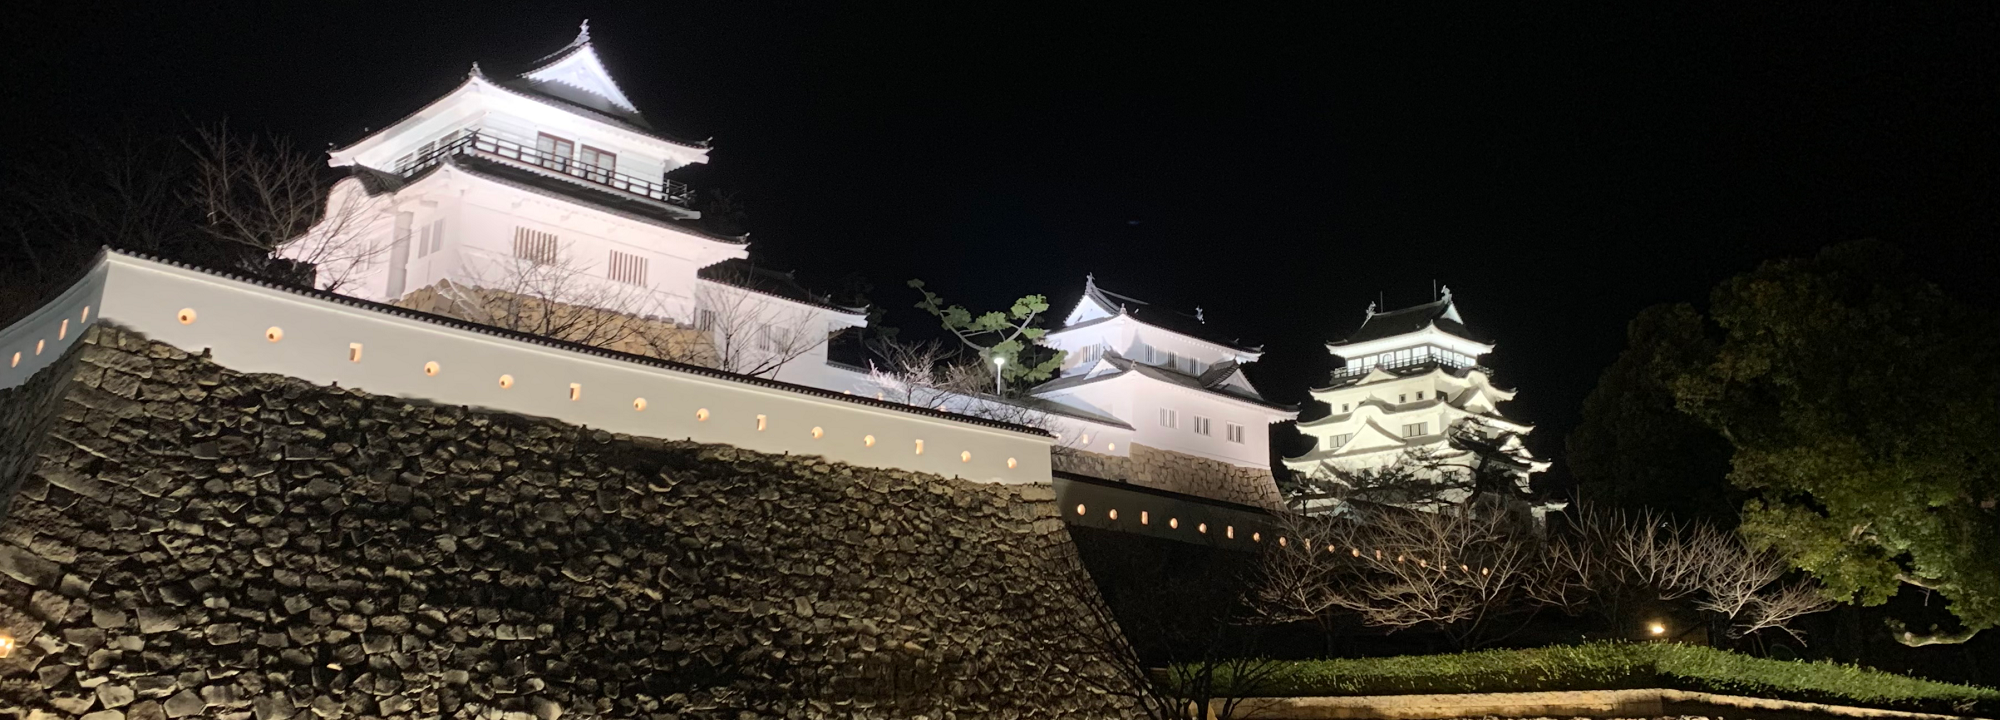 福山城のライトアップの写真